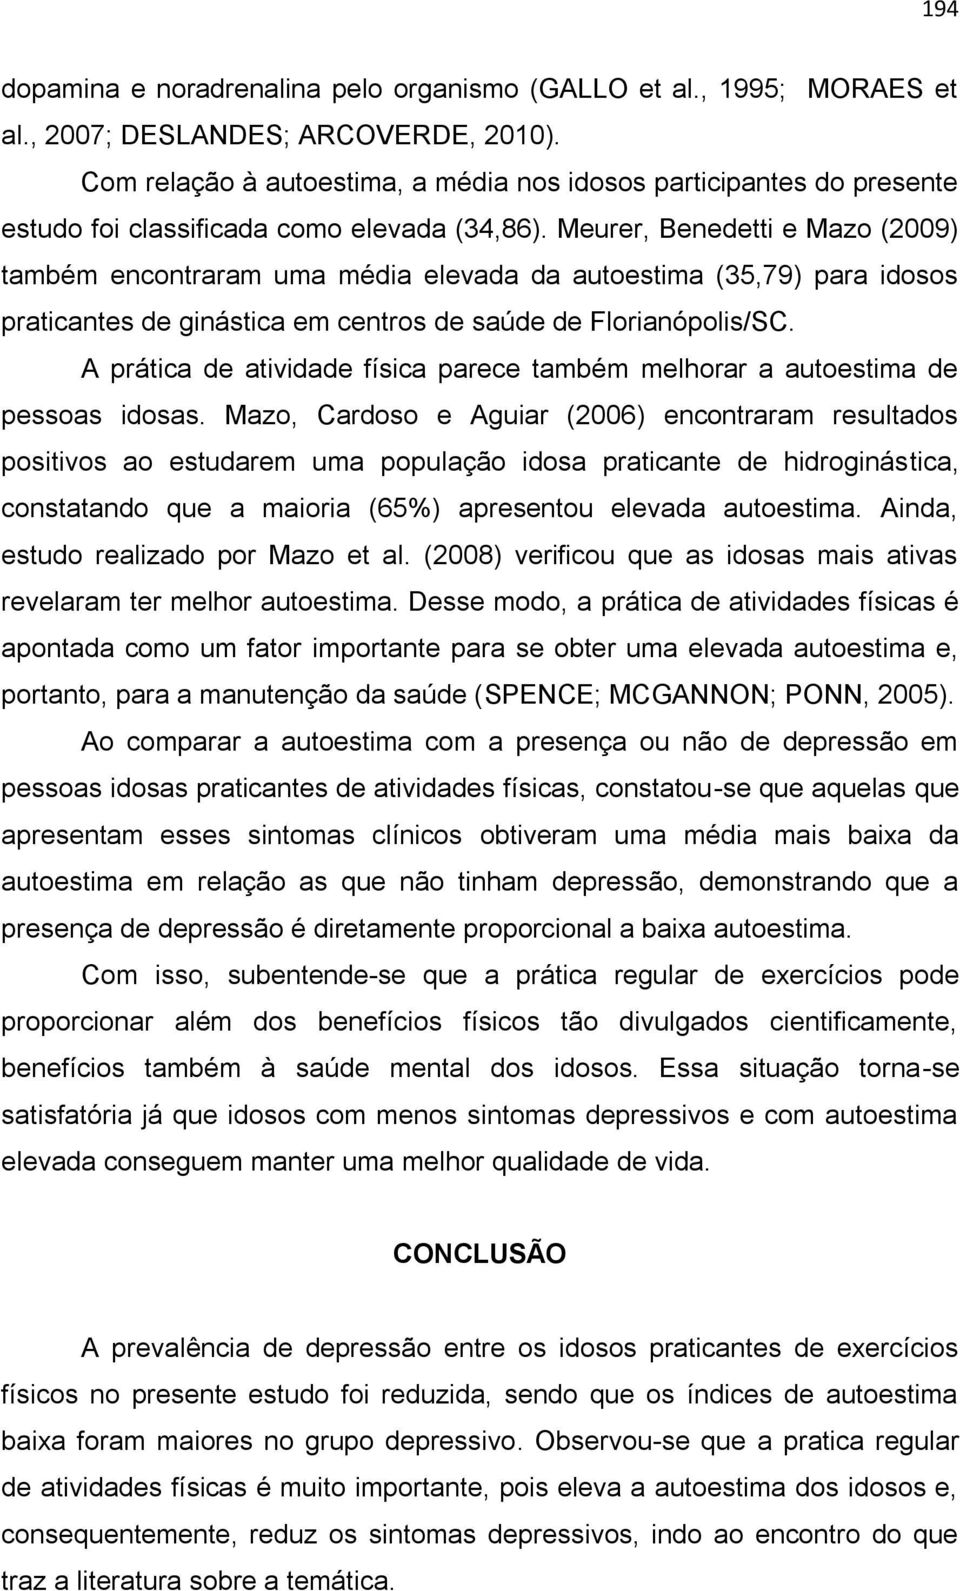 Meurer, Benedetti e Mazo (2009) também encontraram uma média elevada da autoestima (35,79) para idosos praticantes de ginástica em centros de saúde de Florianópolis/SC.